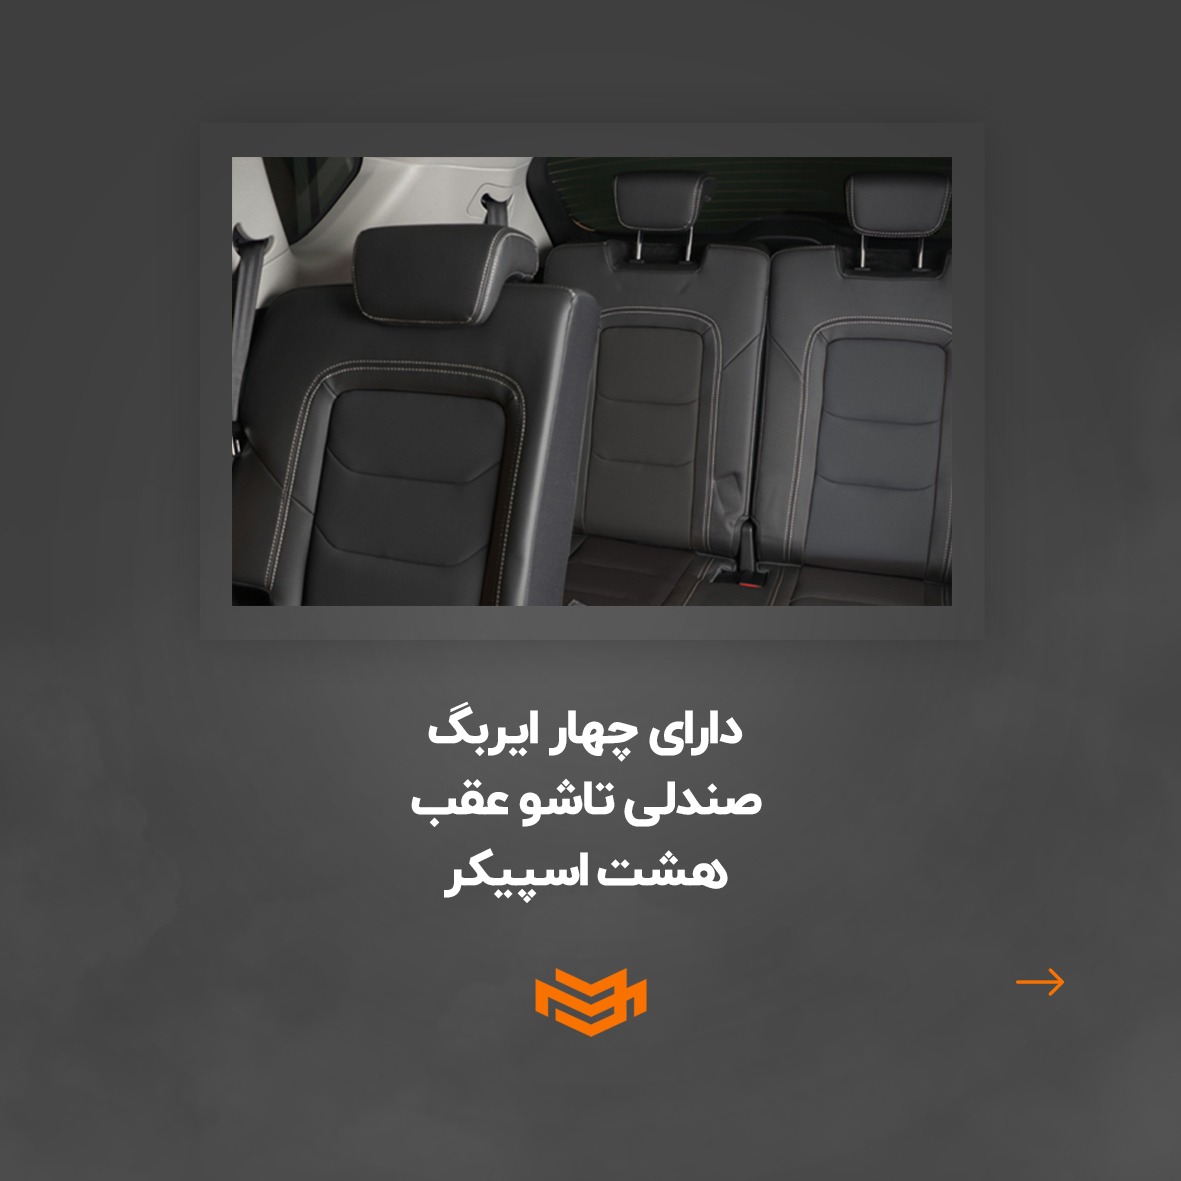 طراحی پست اسلایدی برای نمایندگی جلیل مصیر